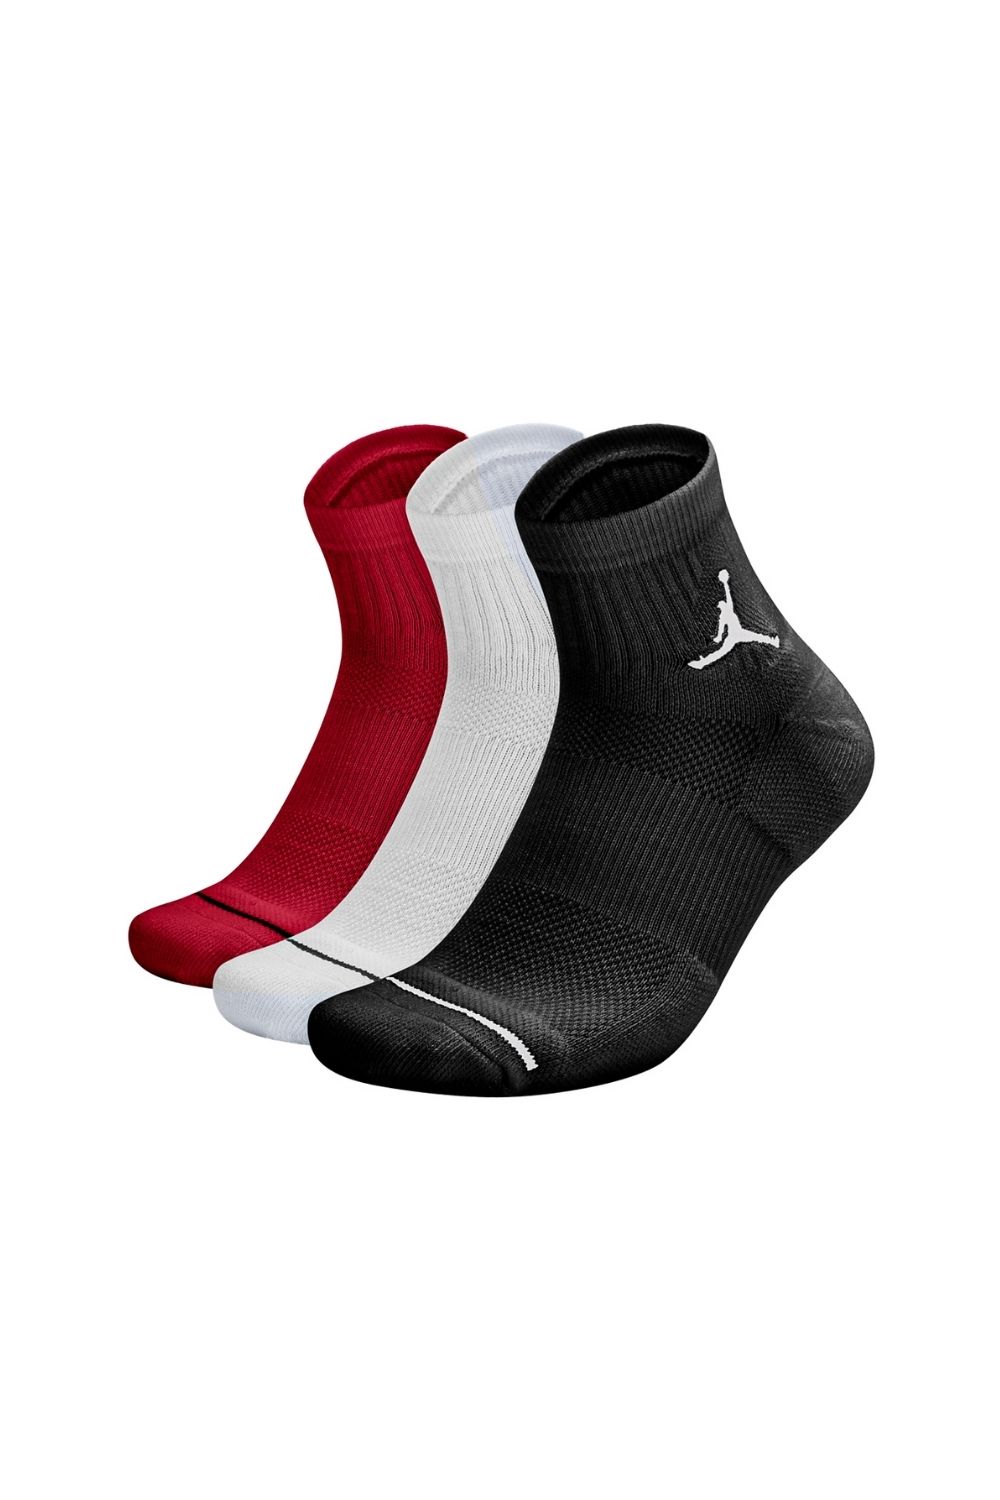 NIKE - Σετ κάλτσες JORDAN EVRY MAX ANKLE - 3PPK κόκκινες-λευκές-μαύρες Γυναικεία/Αξεσουάρ/Κάλτσες